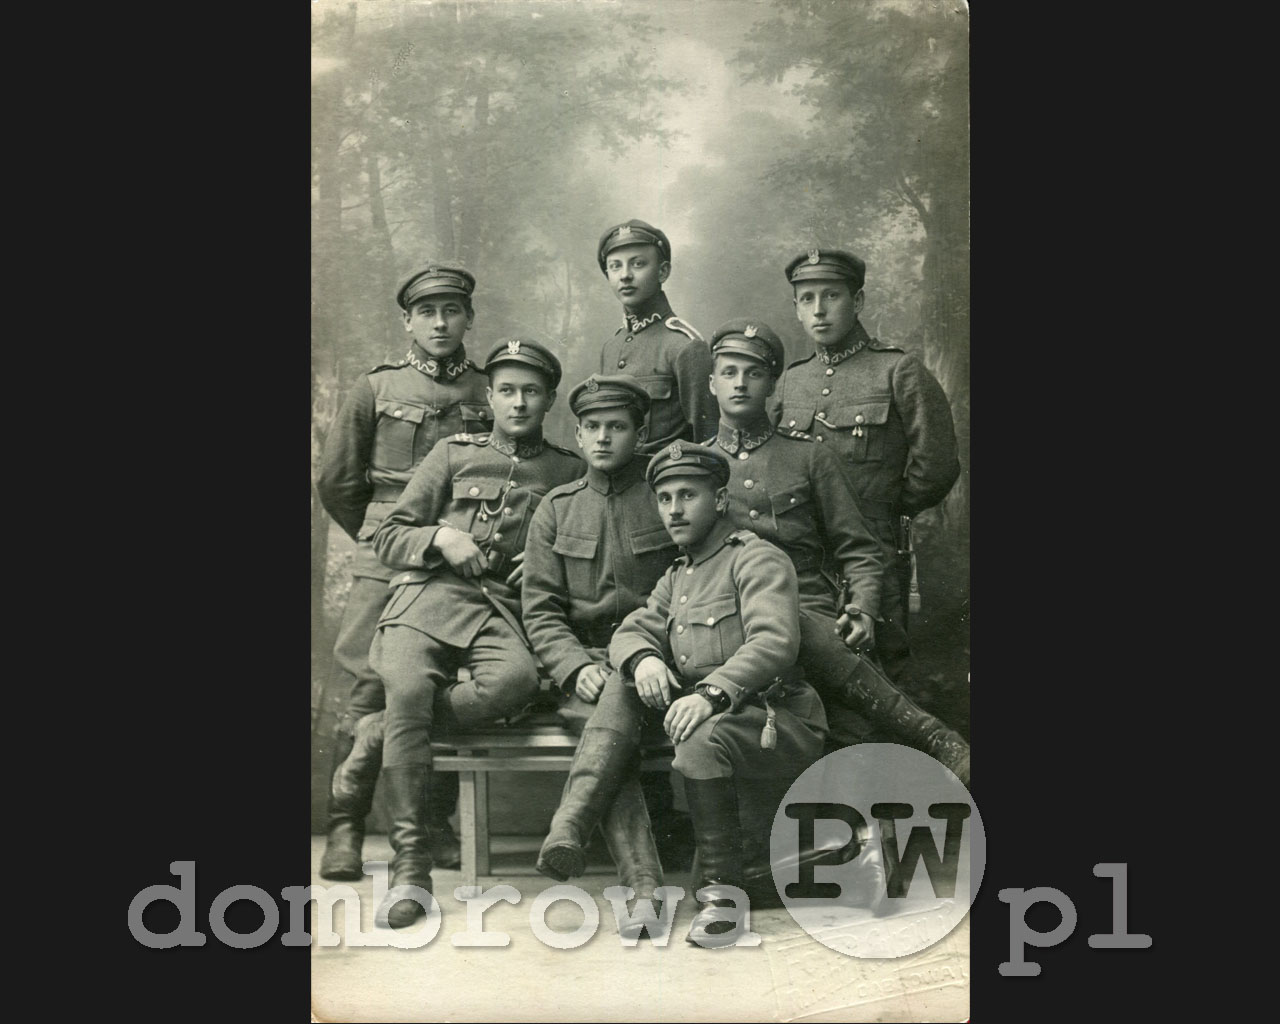 1919 r. Dąbrowa Górnicza - Żołnierze (R. Radzikowski)